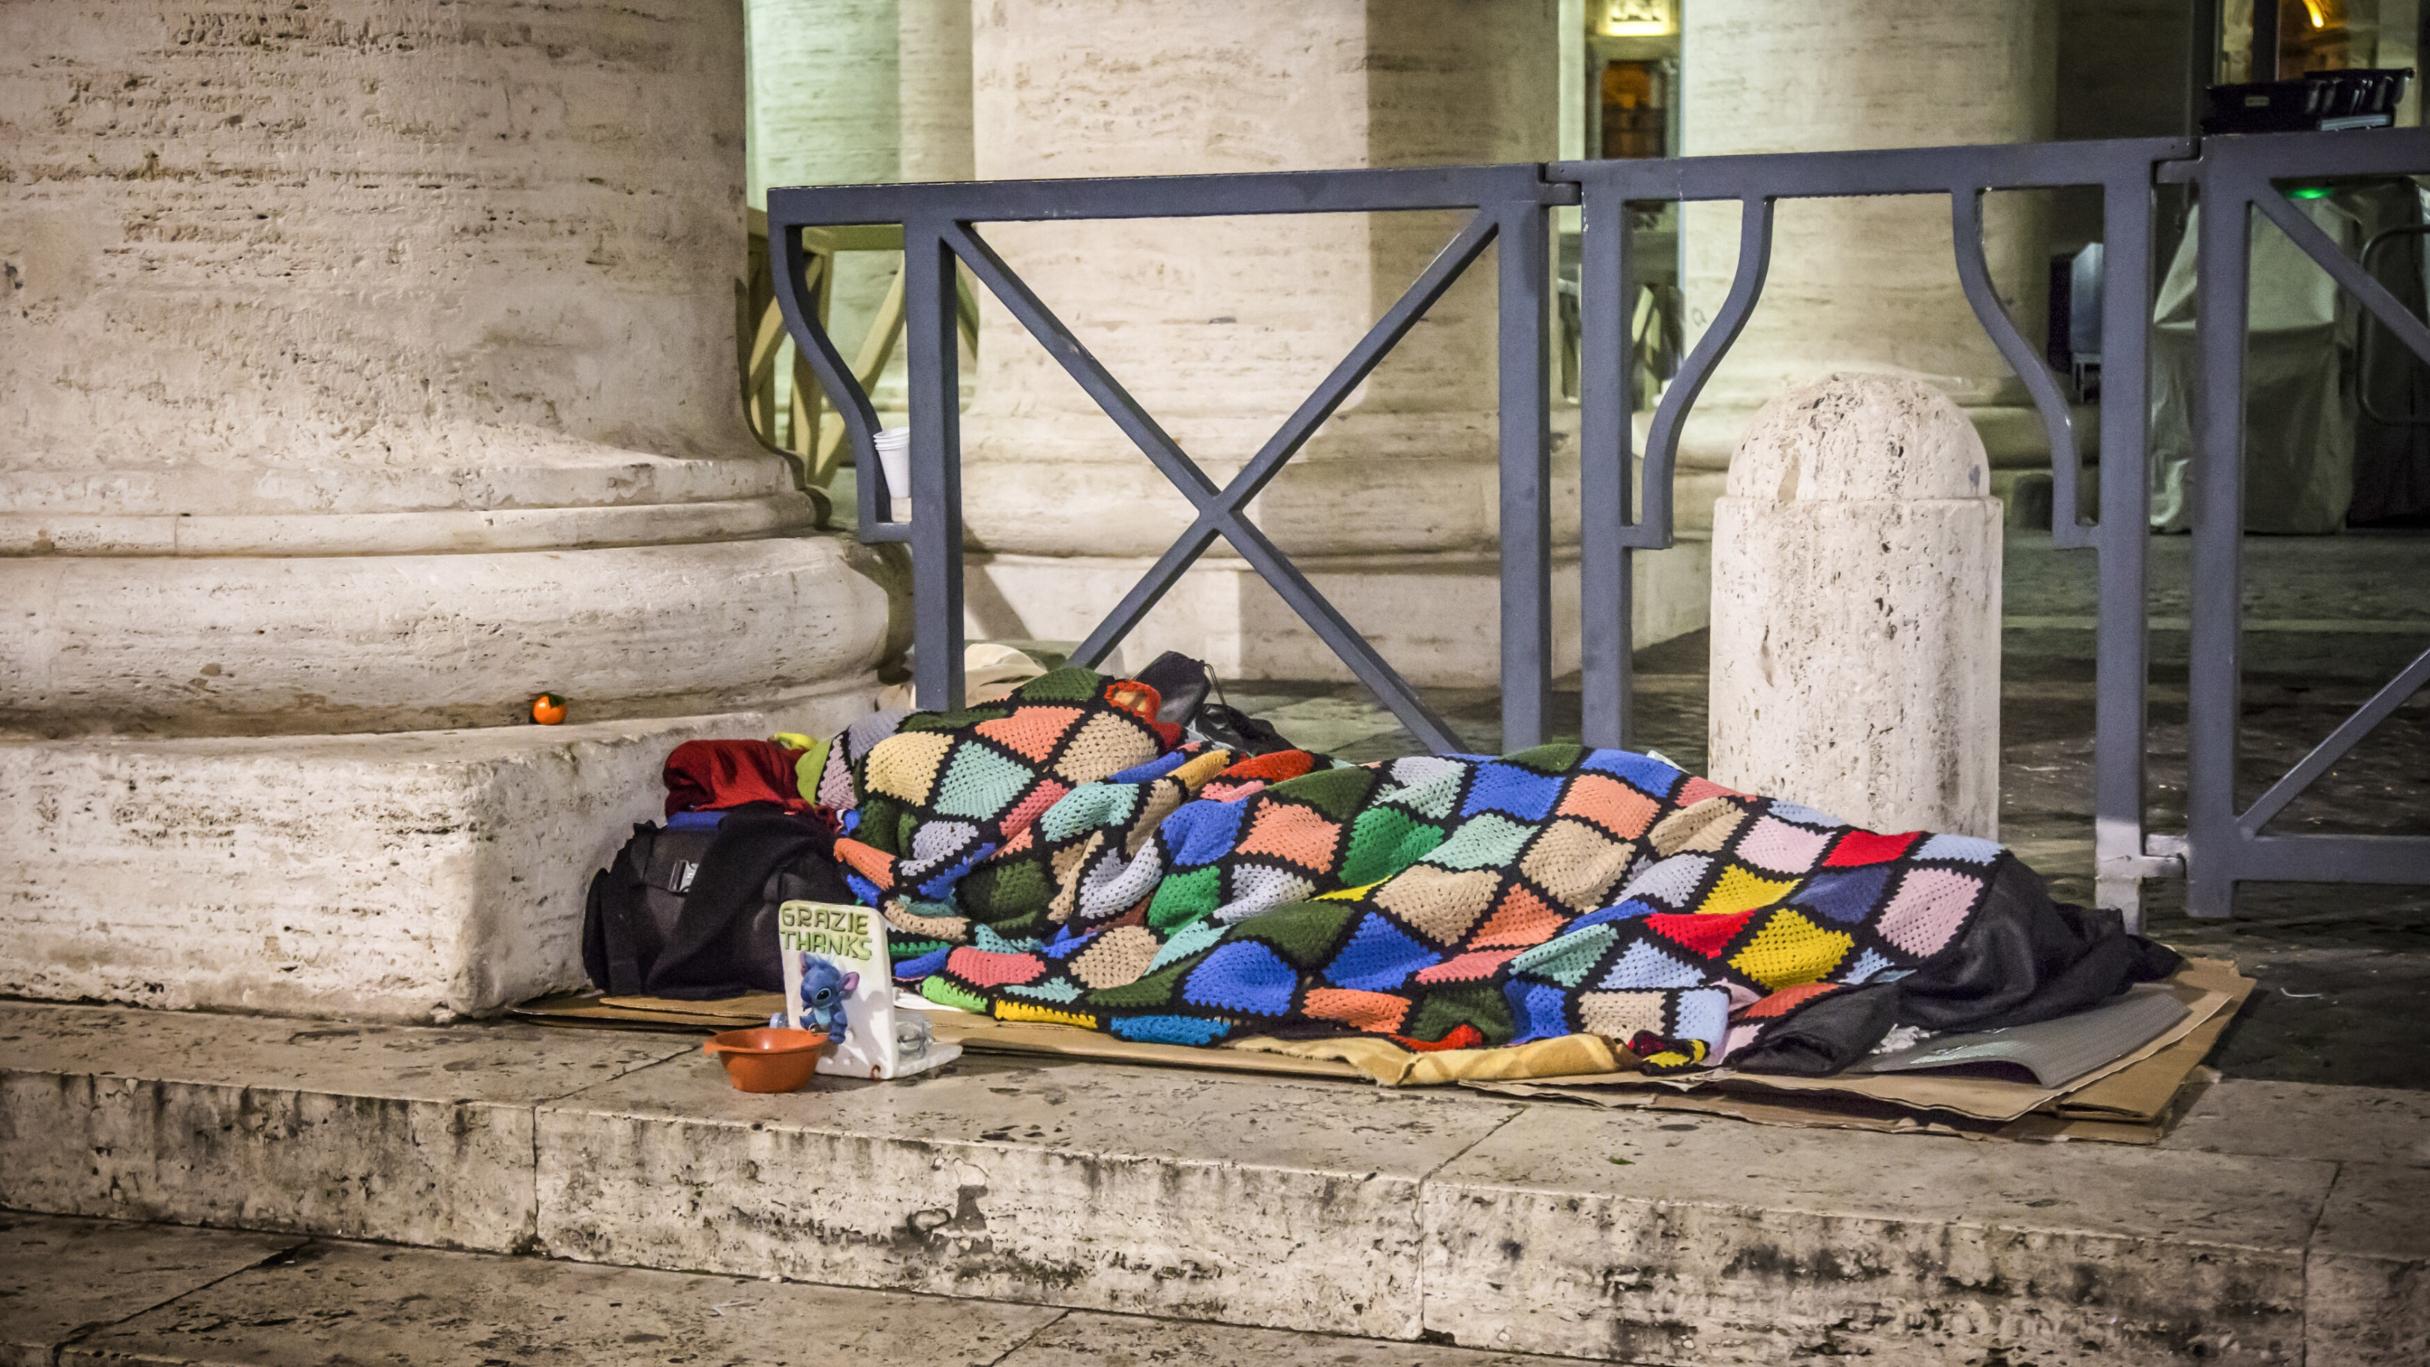 Ein Obdachloser schläft am 10. Januar 2017 auf Pappkartons unter einer bunten Decke auf dem Boden unter den Bernini-Kolonnaden am Petersplatz im Vatikan. Vor ihm steht ein Sammelbecher.